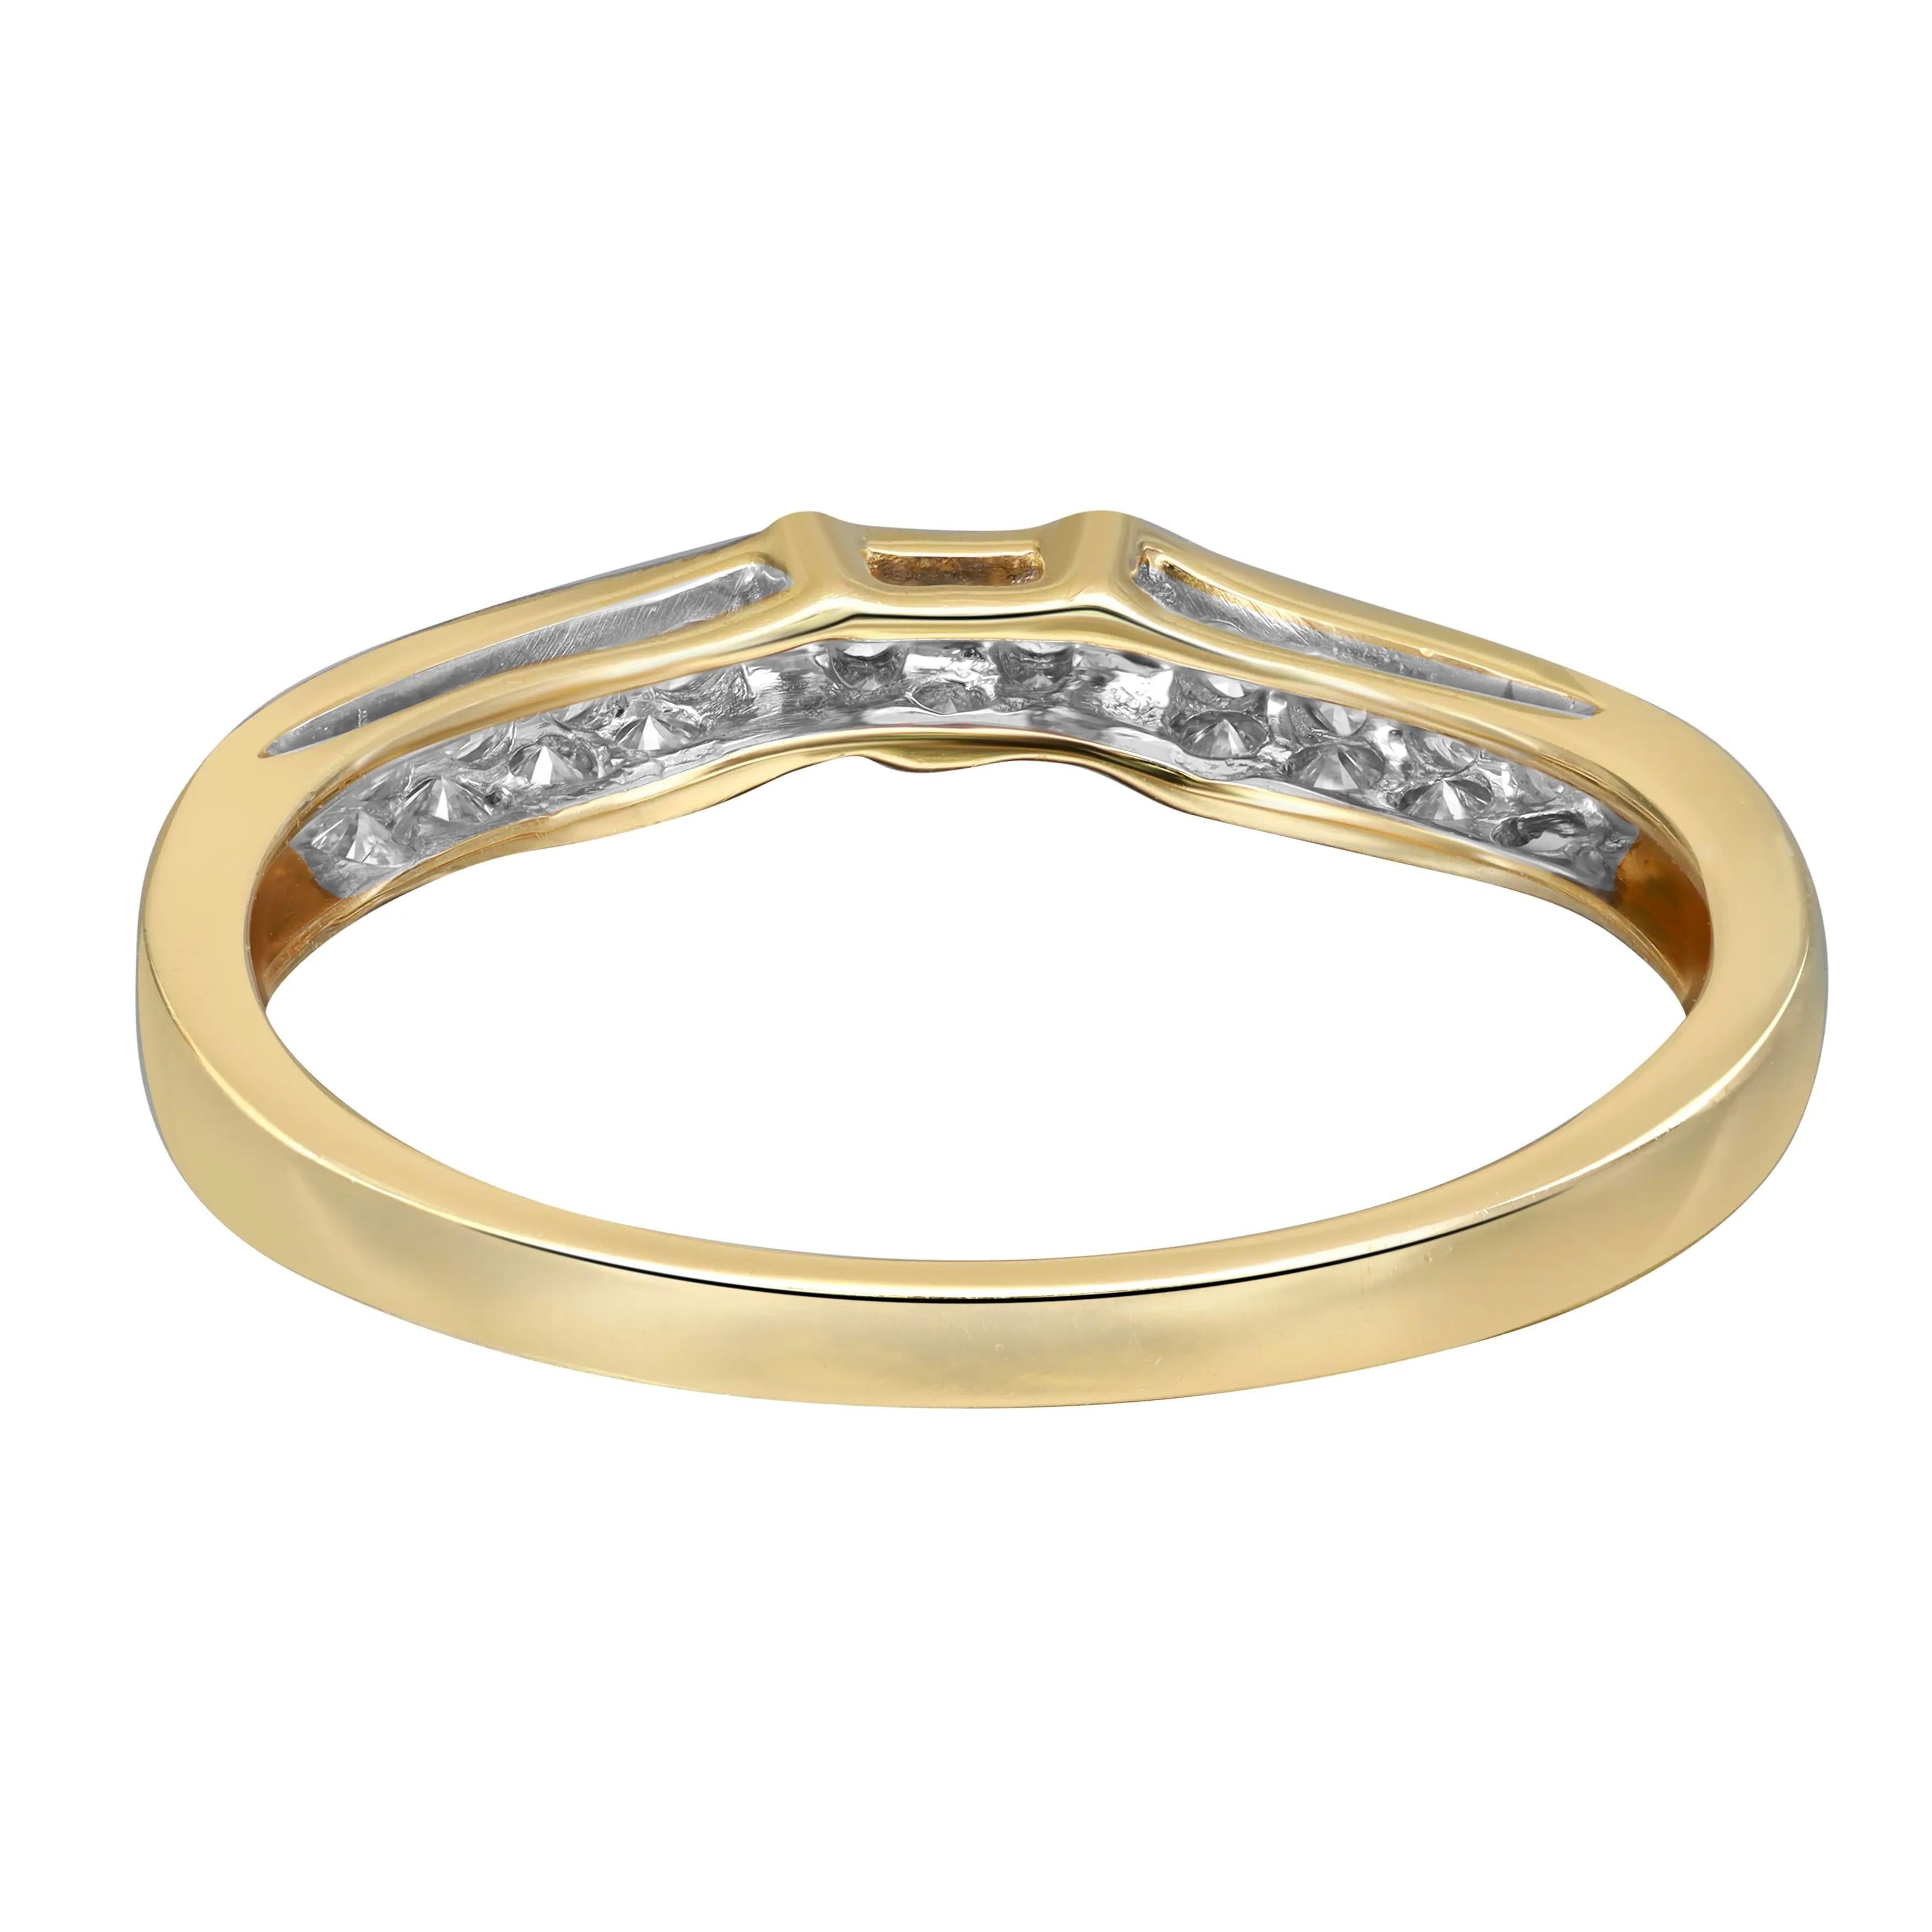 Dieser schöne, zierliche Ring ist mit runden Diamanten im Brillantschliff in Pflasterfassung besetzt. Gefertigt aus hochglanzpoliertem 14 Karat Gelbgold. Diamant Farbe I und SI Klarheit. Gesamtgewicht der Diamanten: 0,37 Karat. Ringgröße: 7,75.